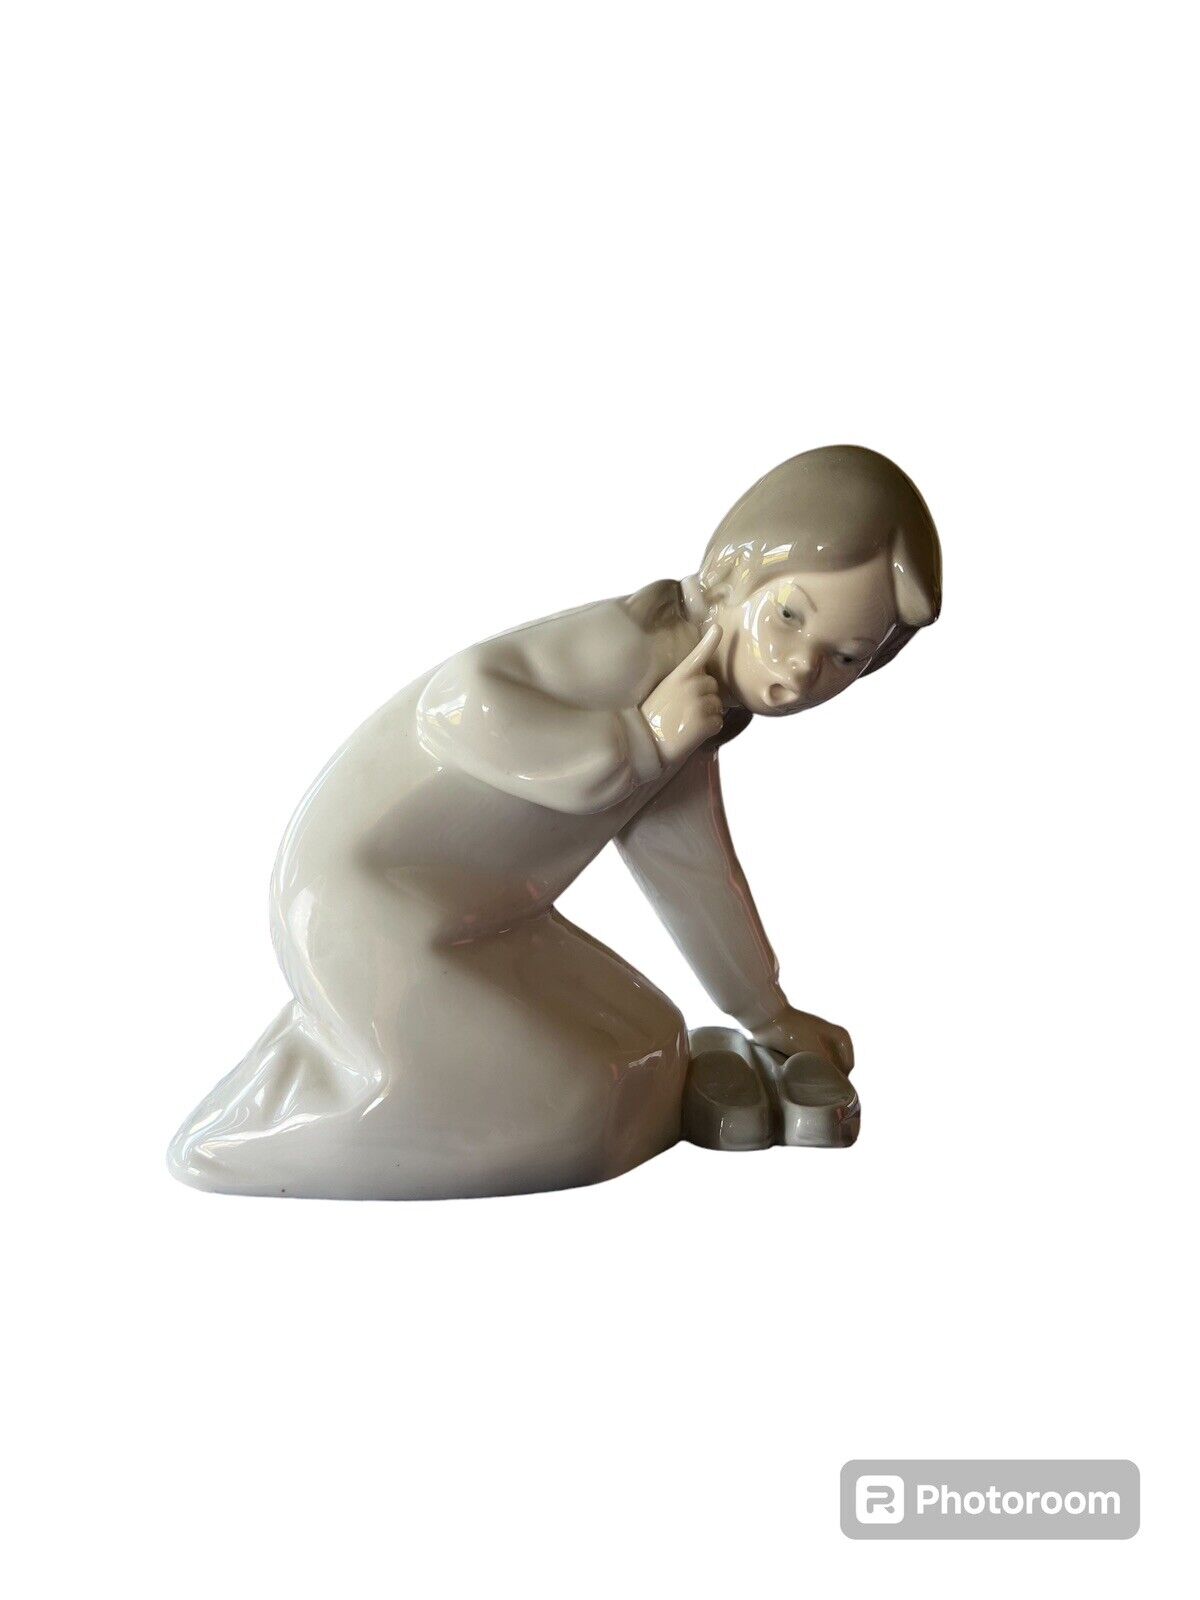 Retired VTG Lladro’ Little Girl With Slippers Porcelain Figurine Made 1977 -1984